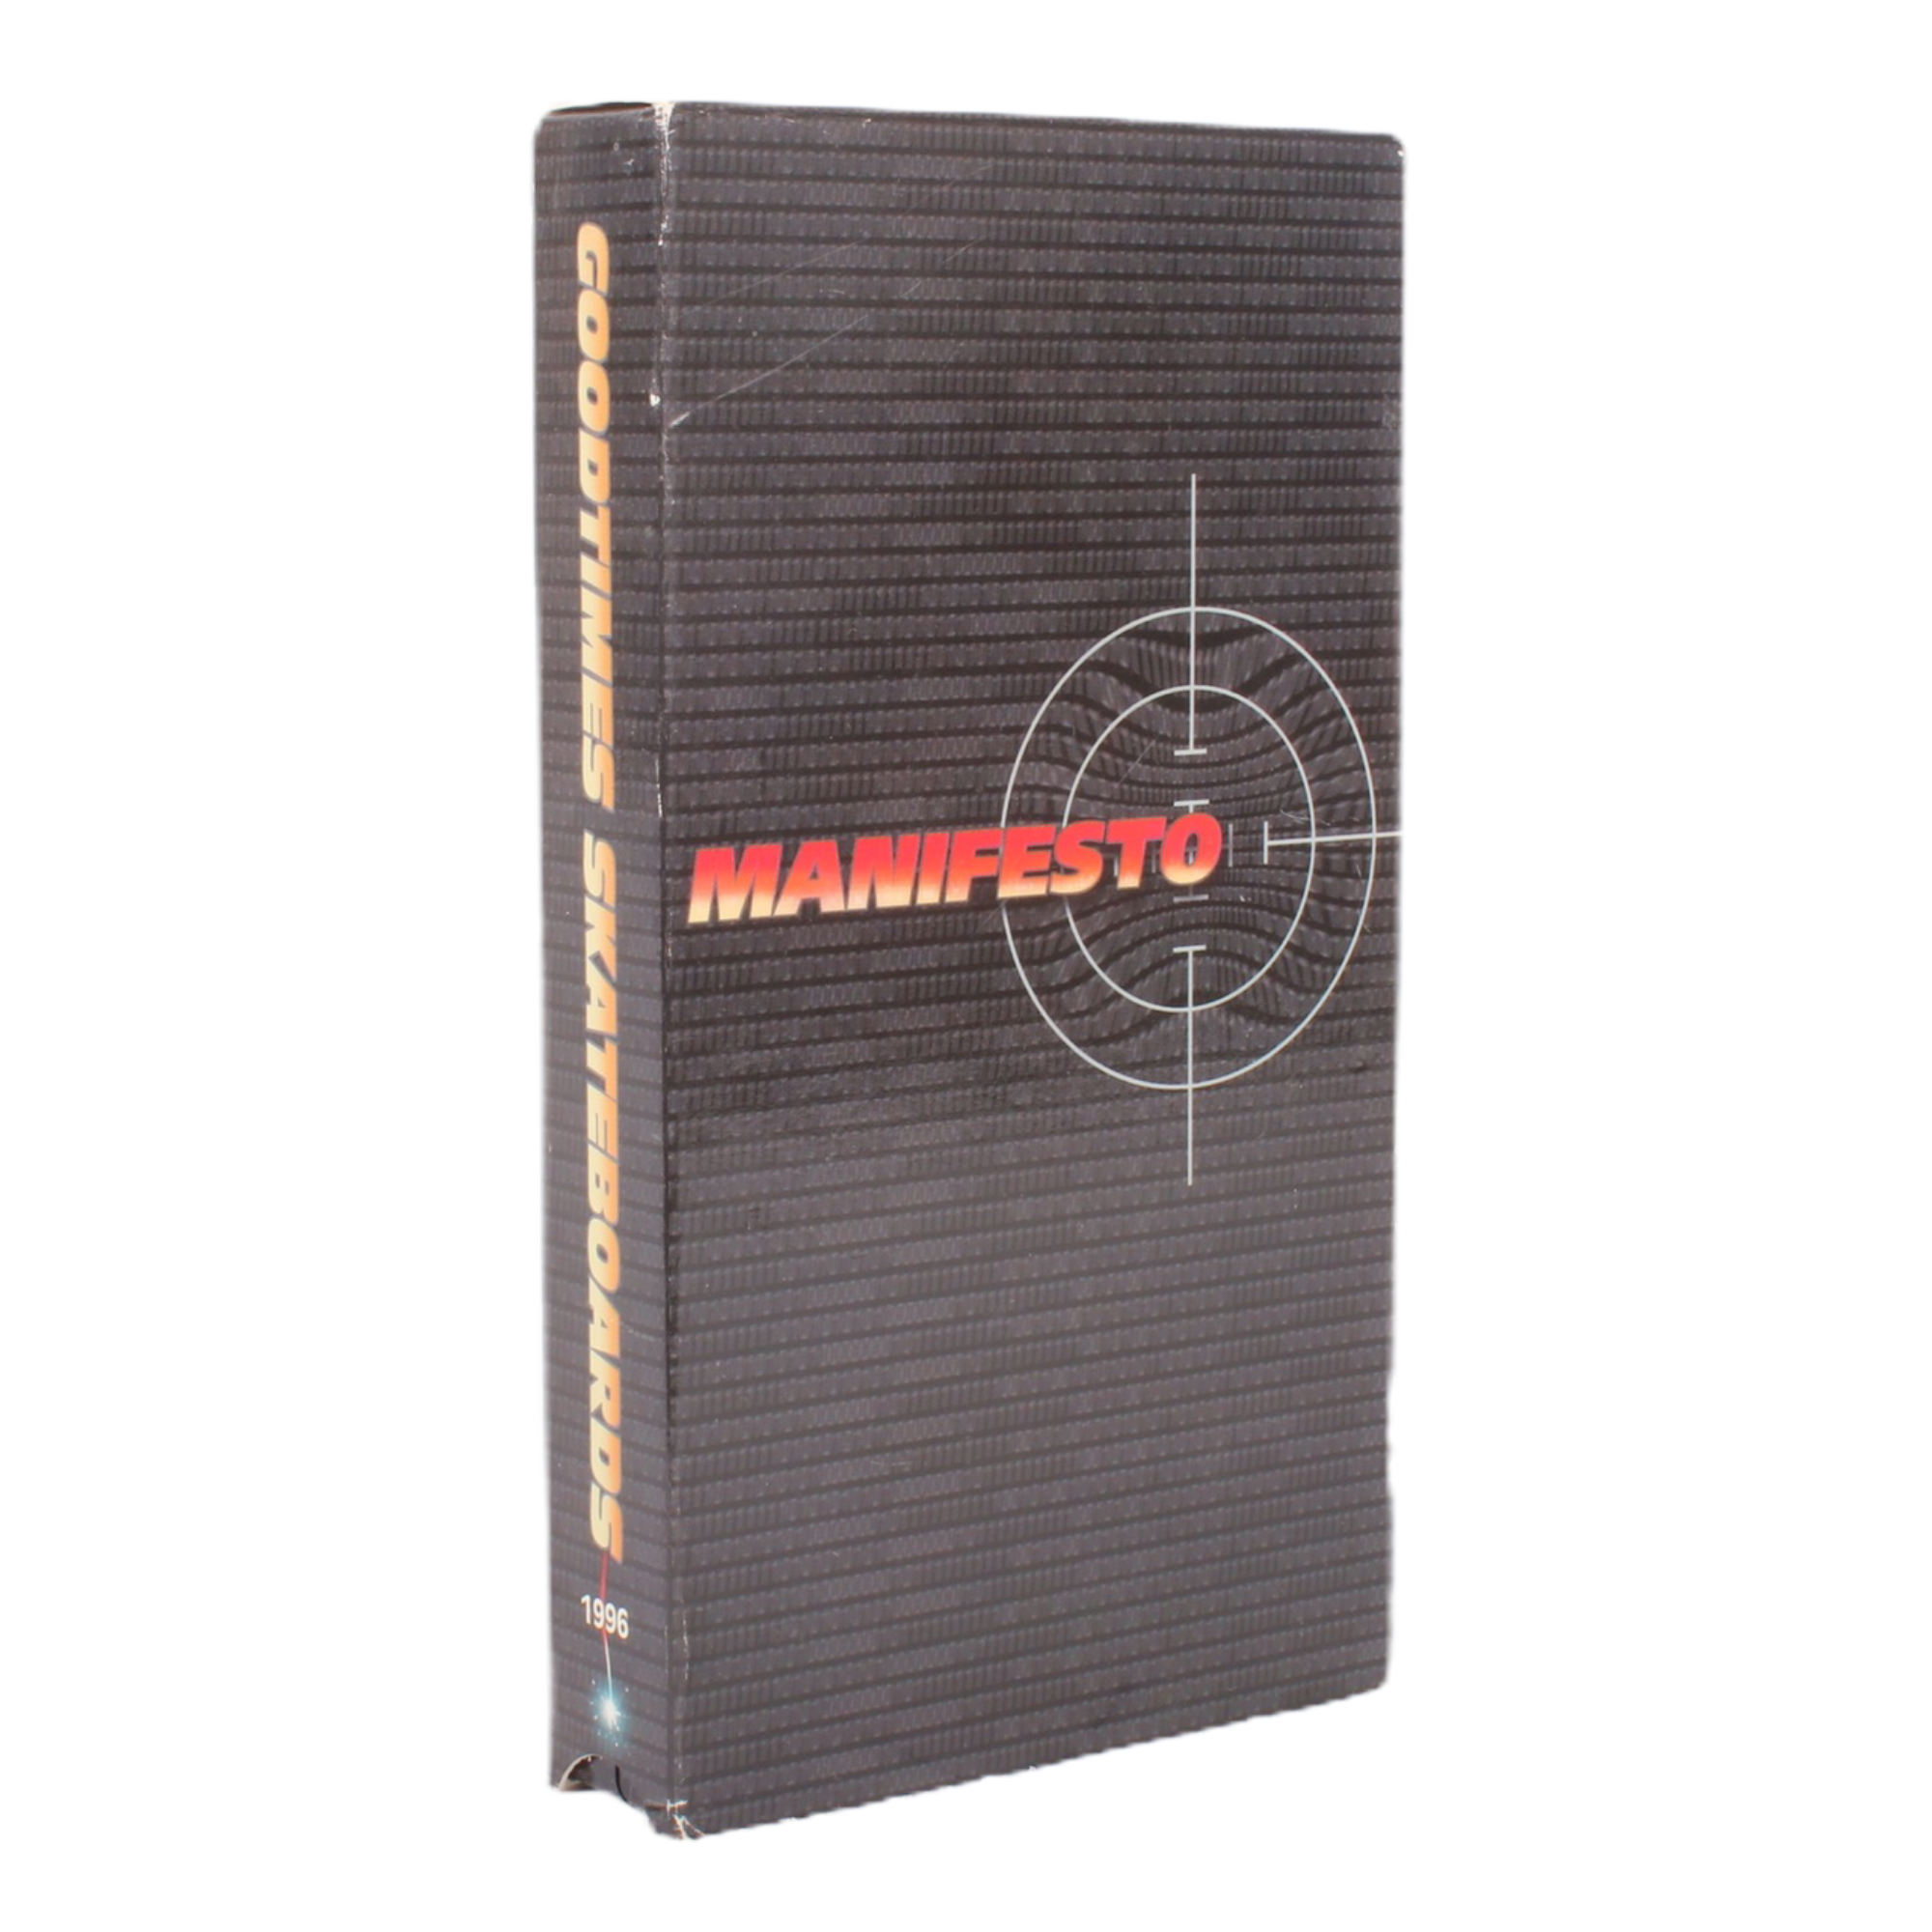 Goodtimes Manifesto VHS (1996)